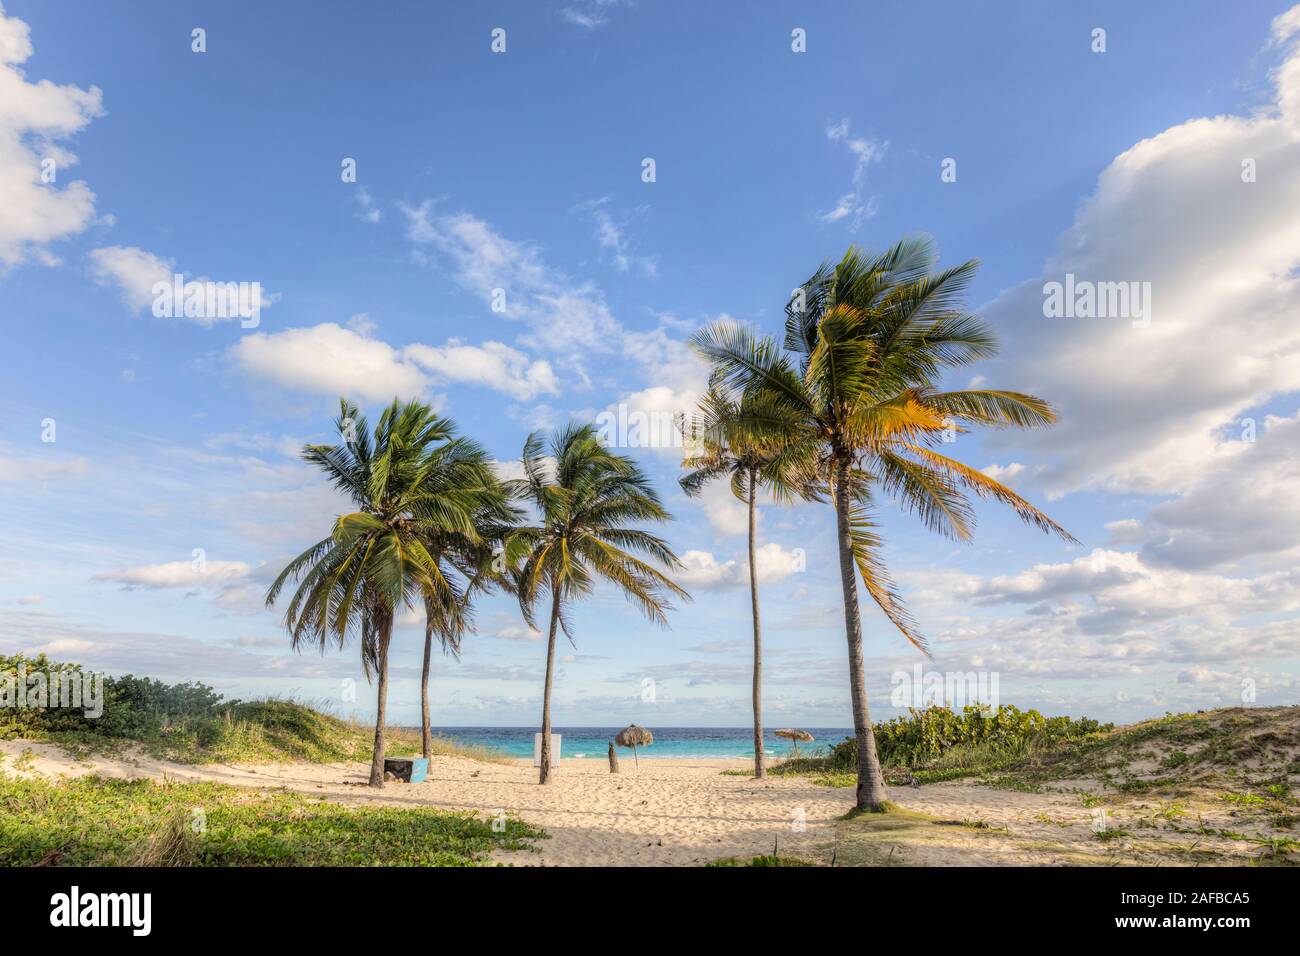 Playa Megano, Playas del Este, Havana, Cuba, North America Stock Photo